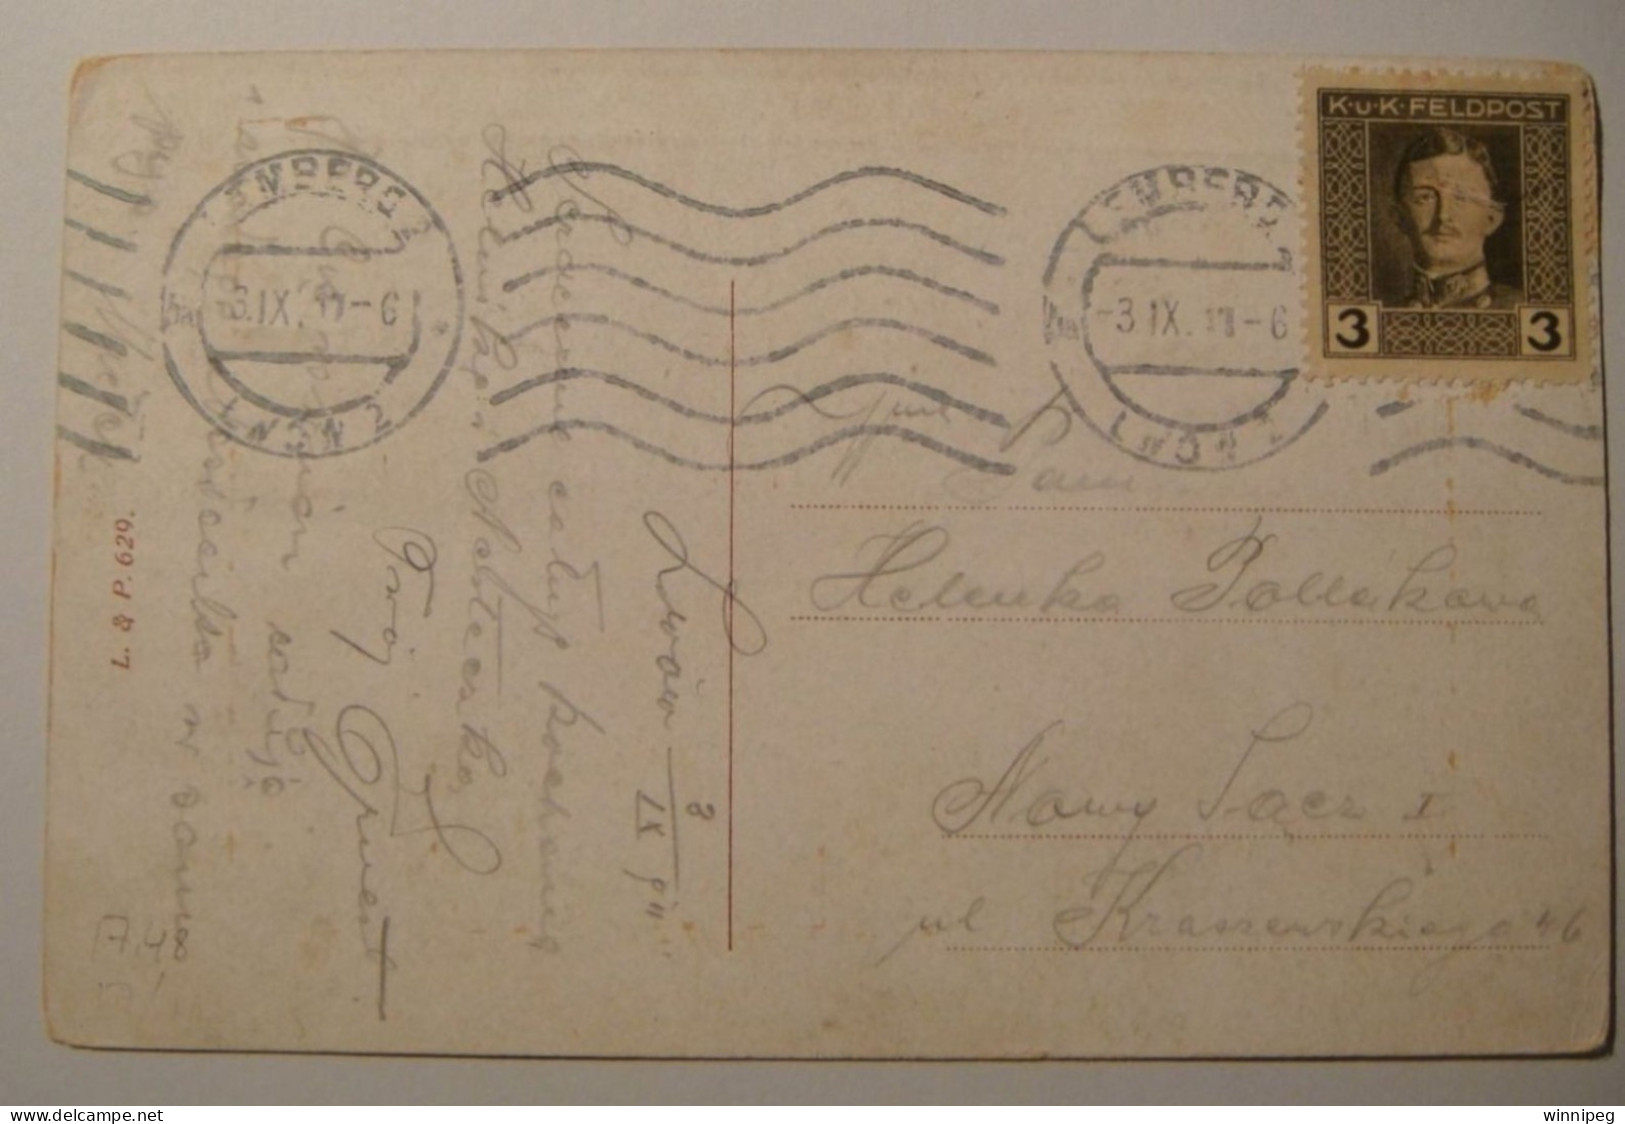 Lwow.Lemberg 2 Pc's.View.L&P 629.WWI,1917 KuK Feldpost Stamp.Kosciol Karmelitow. Z.Grund #19.Poland.Ukraine - Ukraine